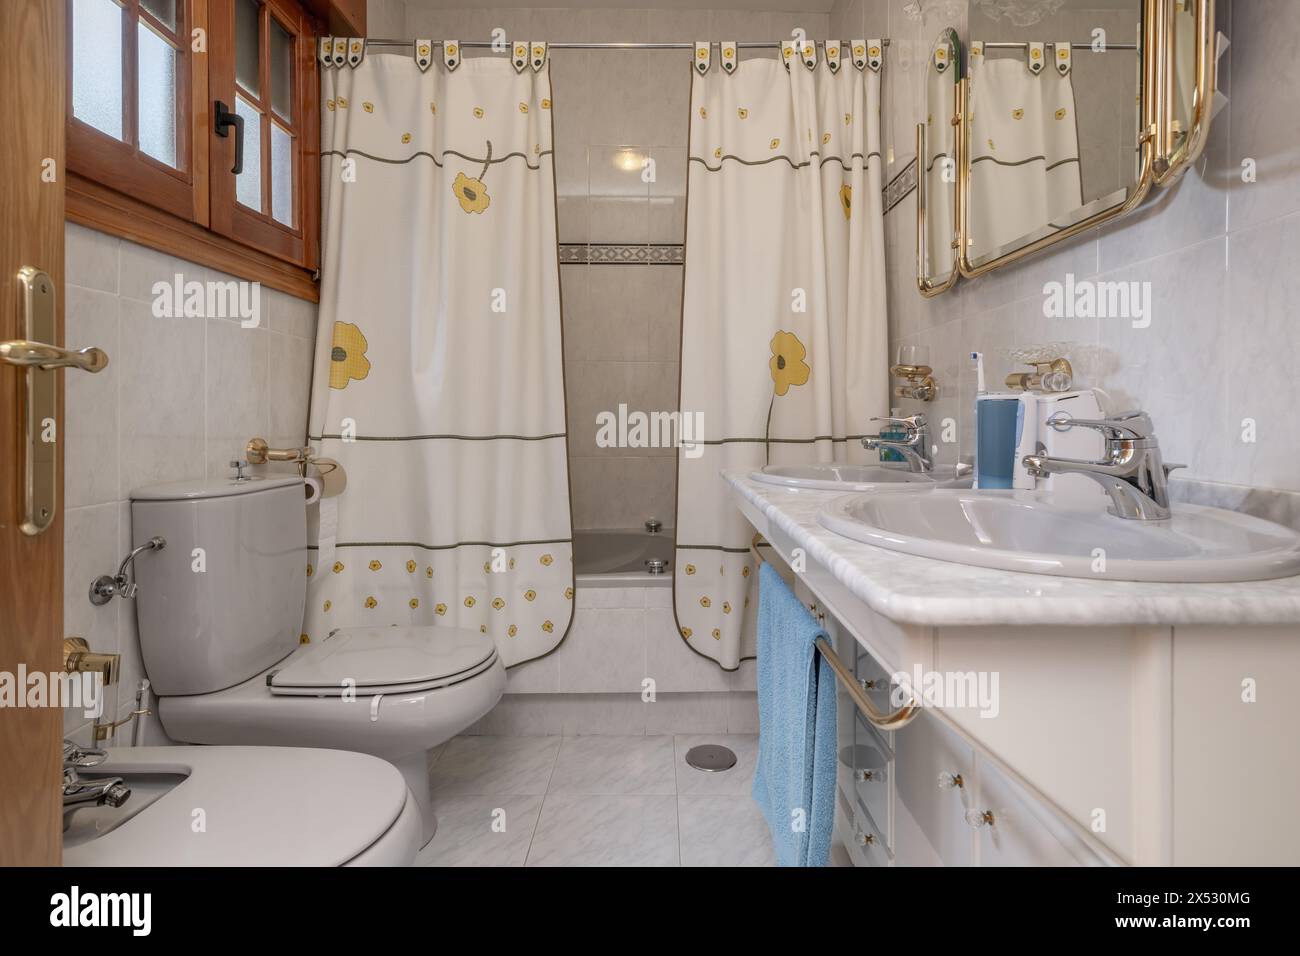 Une salle de bain à l'ancienne avec des rideaux recouvrant la baignoire Banque D'Images